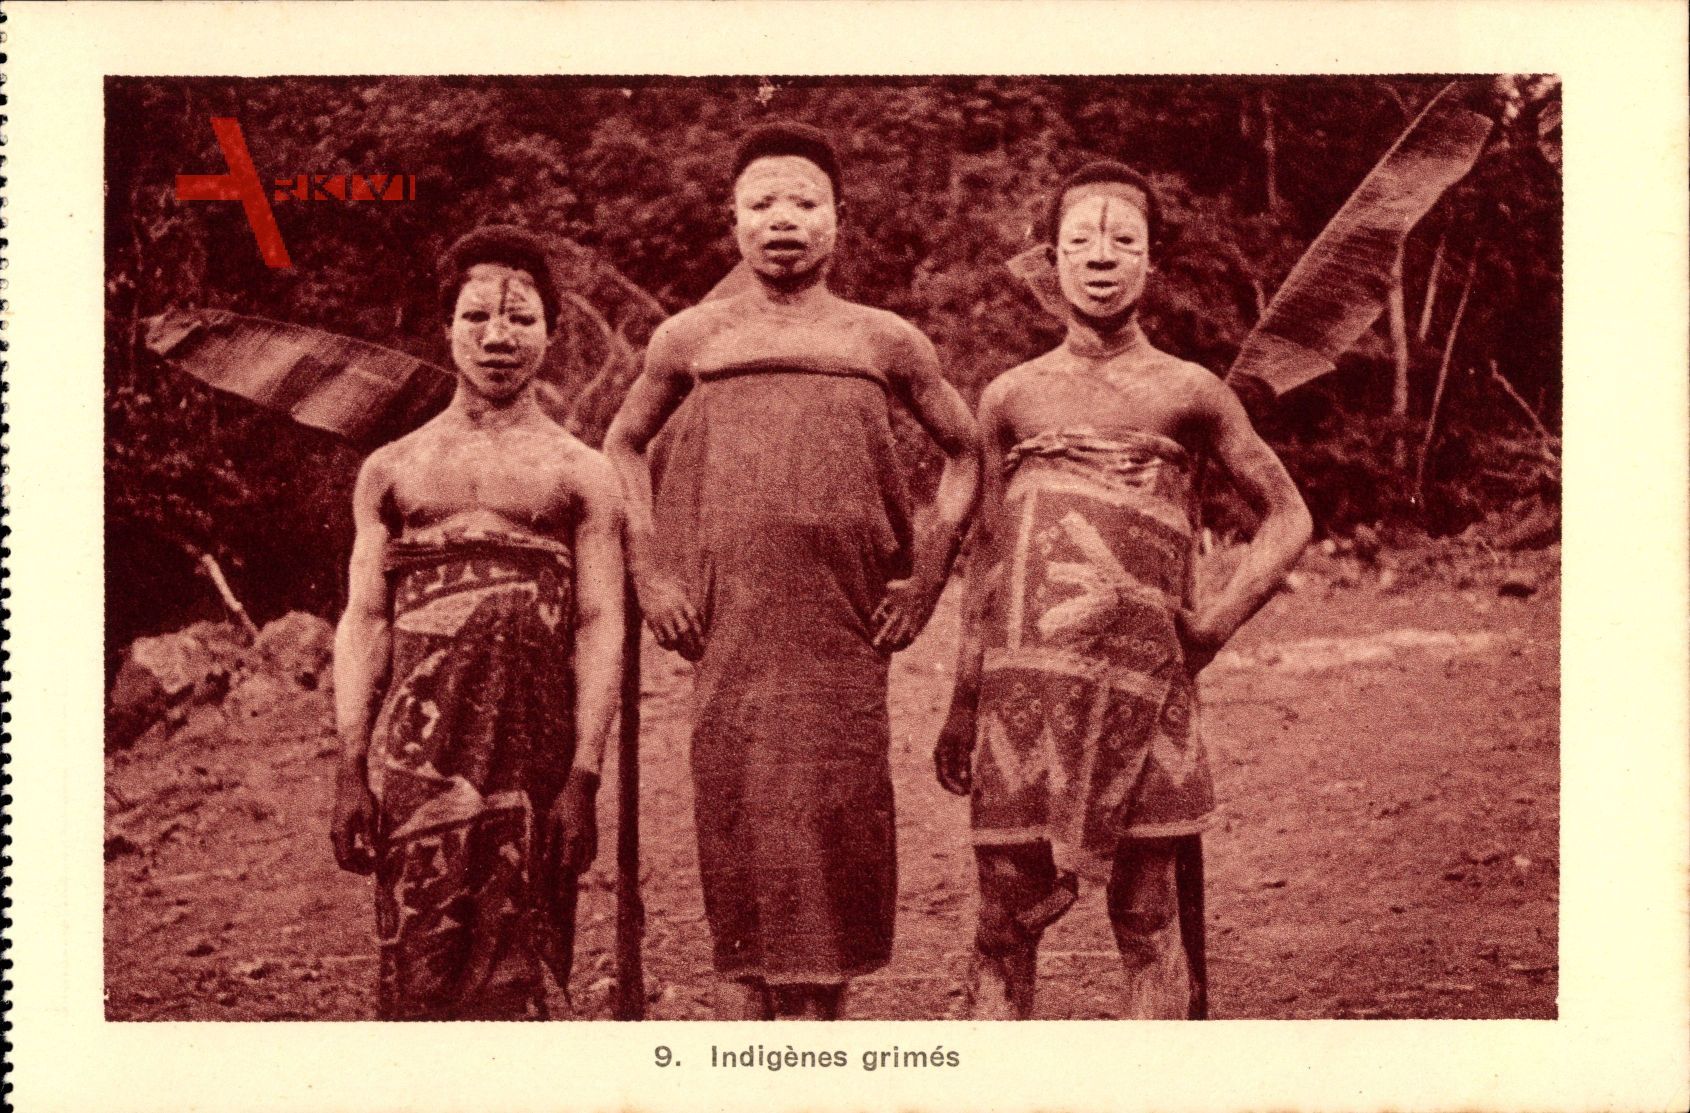 Indigenes grimes, Eingeborene mit Gesichtsbemalung, Bananenpalmen